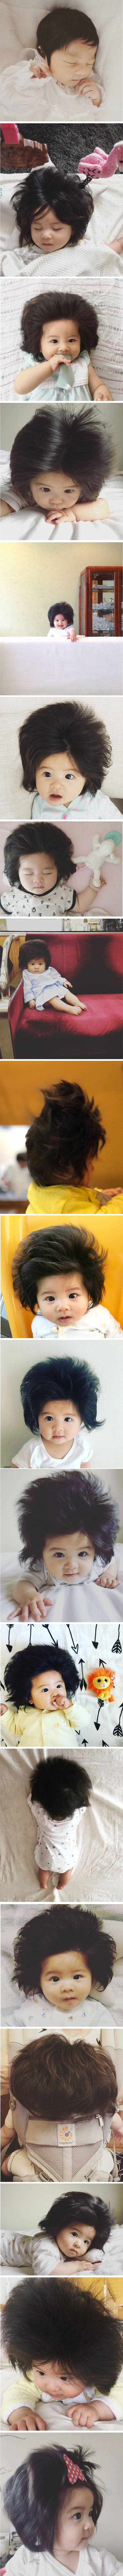 Šest mjeseci stara beba ima ogromnu kosu pomoću koje je osvojila Instagram